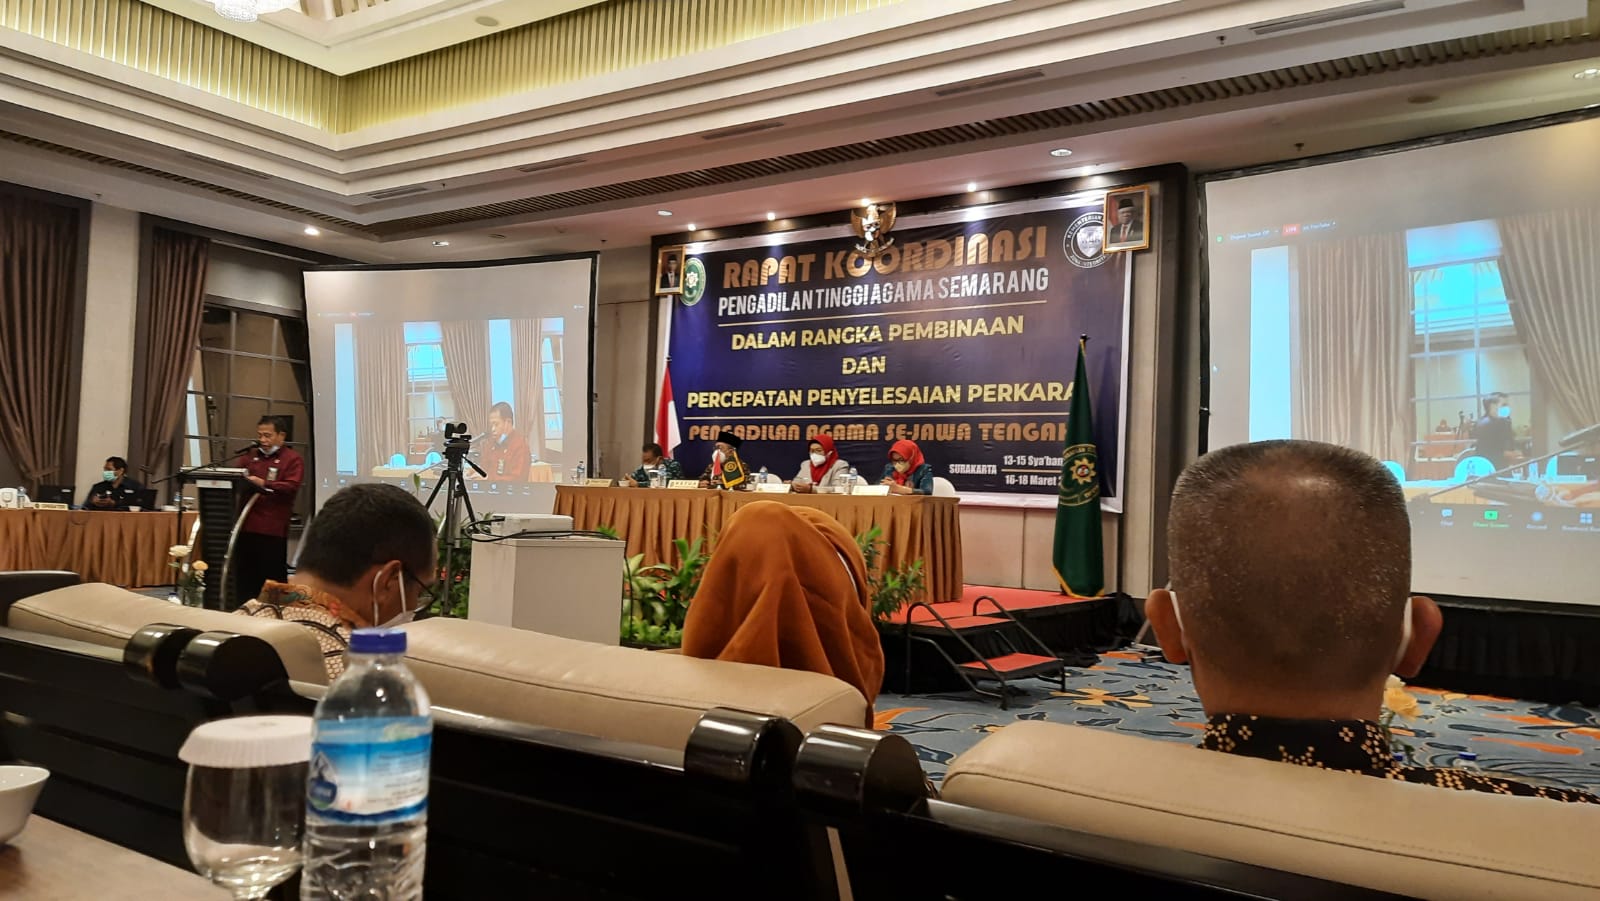 KPTA Semarang membuka secara resmi acara Rapat Koordinasi Pengadilan Agama Se-Jawa Tengah